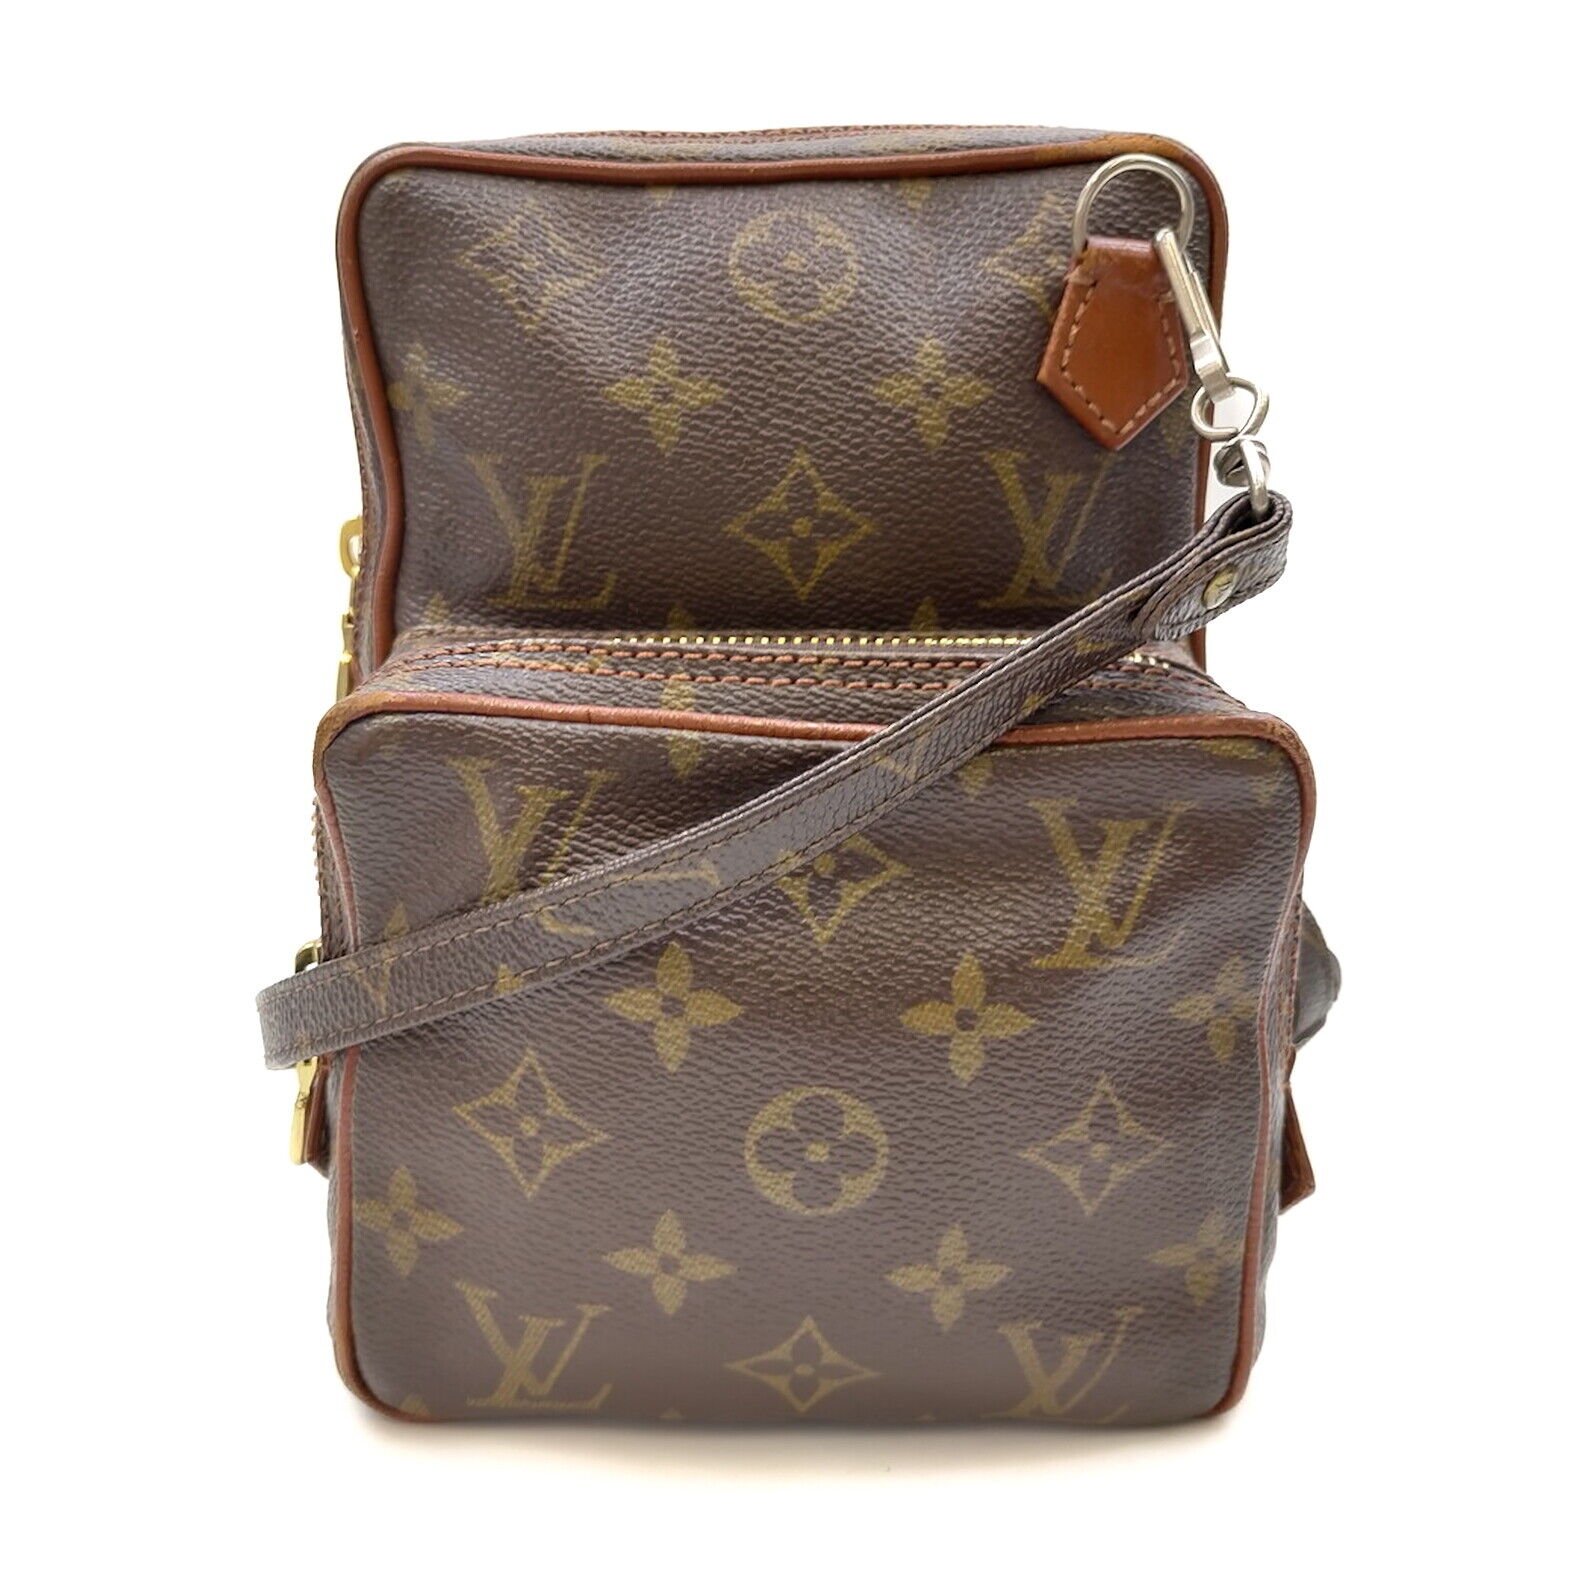 VintageLouis Vuitton LV Shoulder Bag Amazon M45236 Browns Monogram 2207061